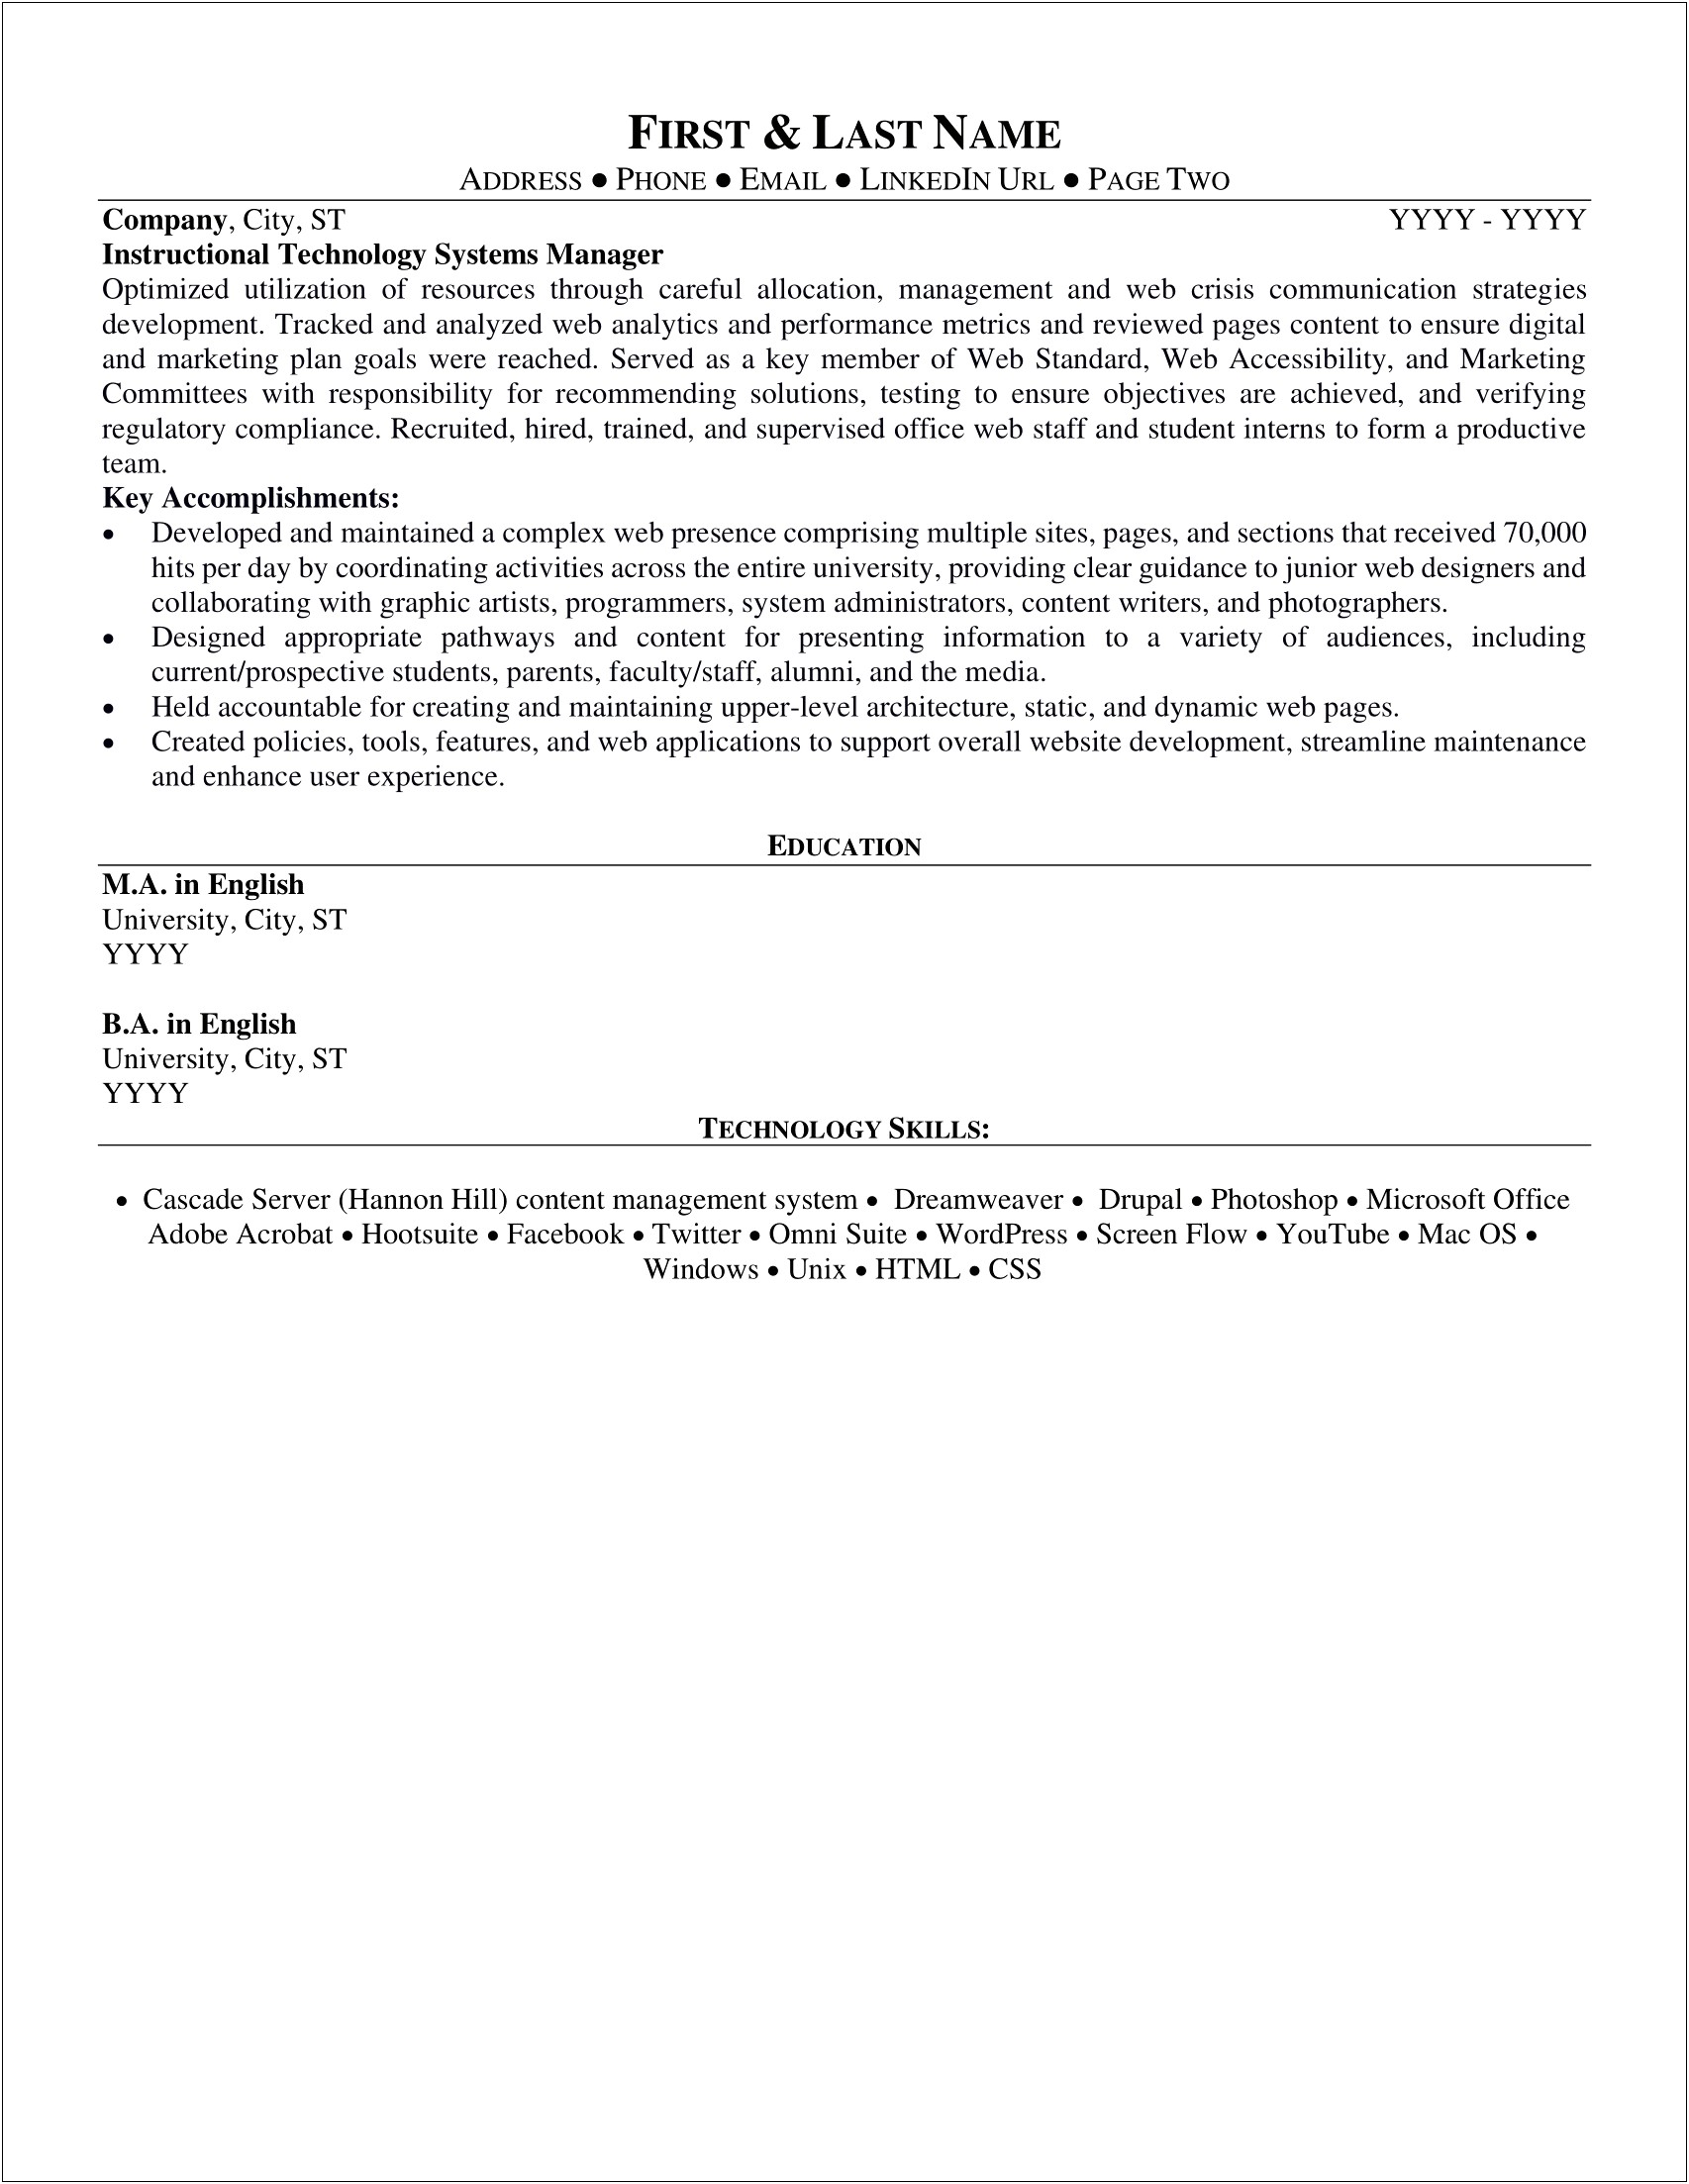 Resume Example For Rockefeller University Job